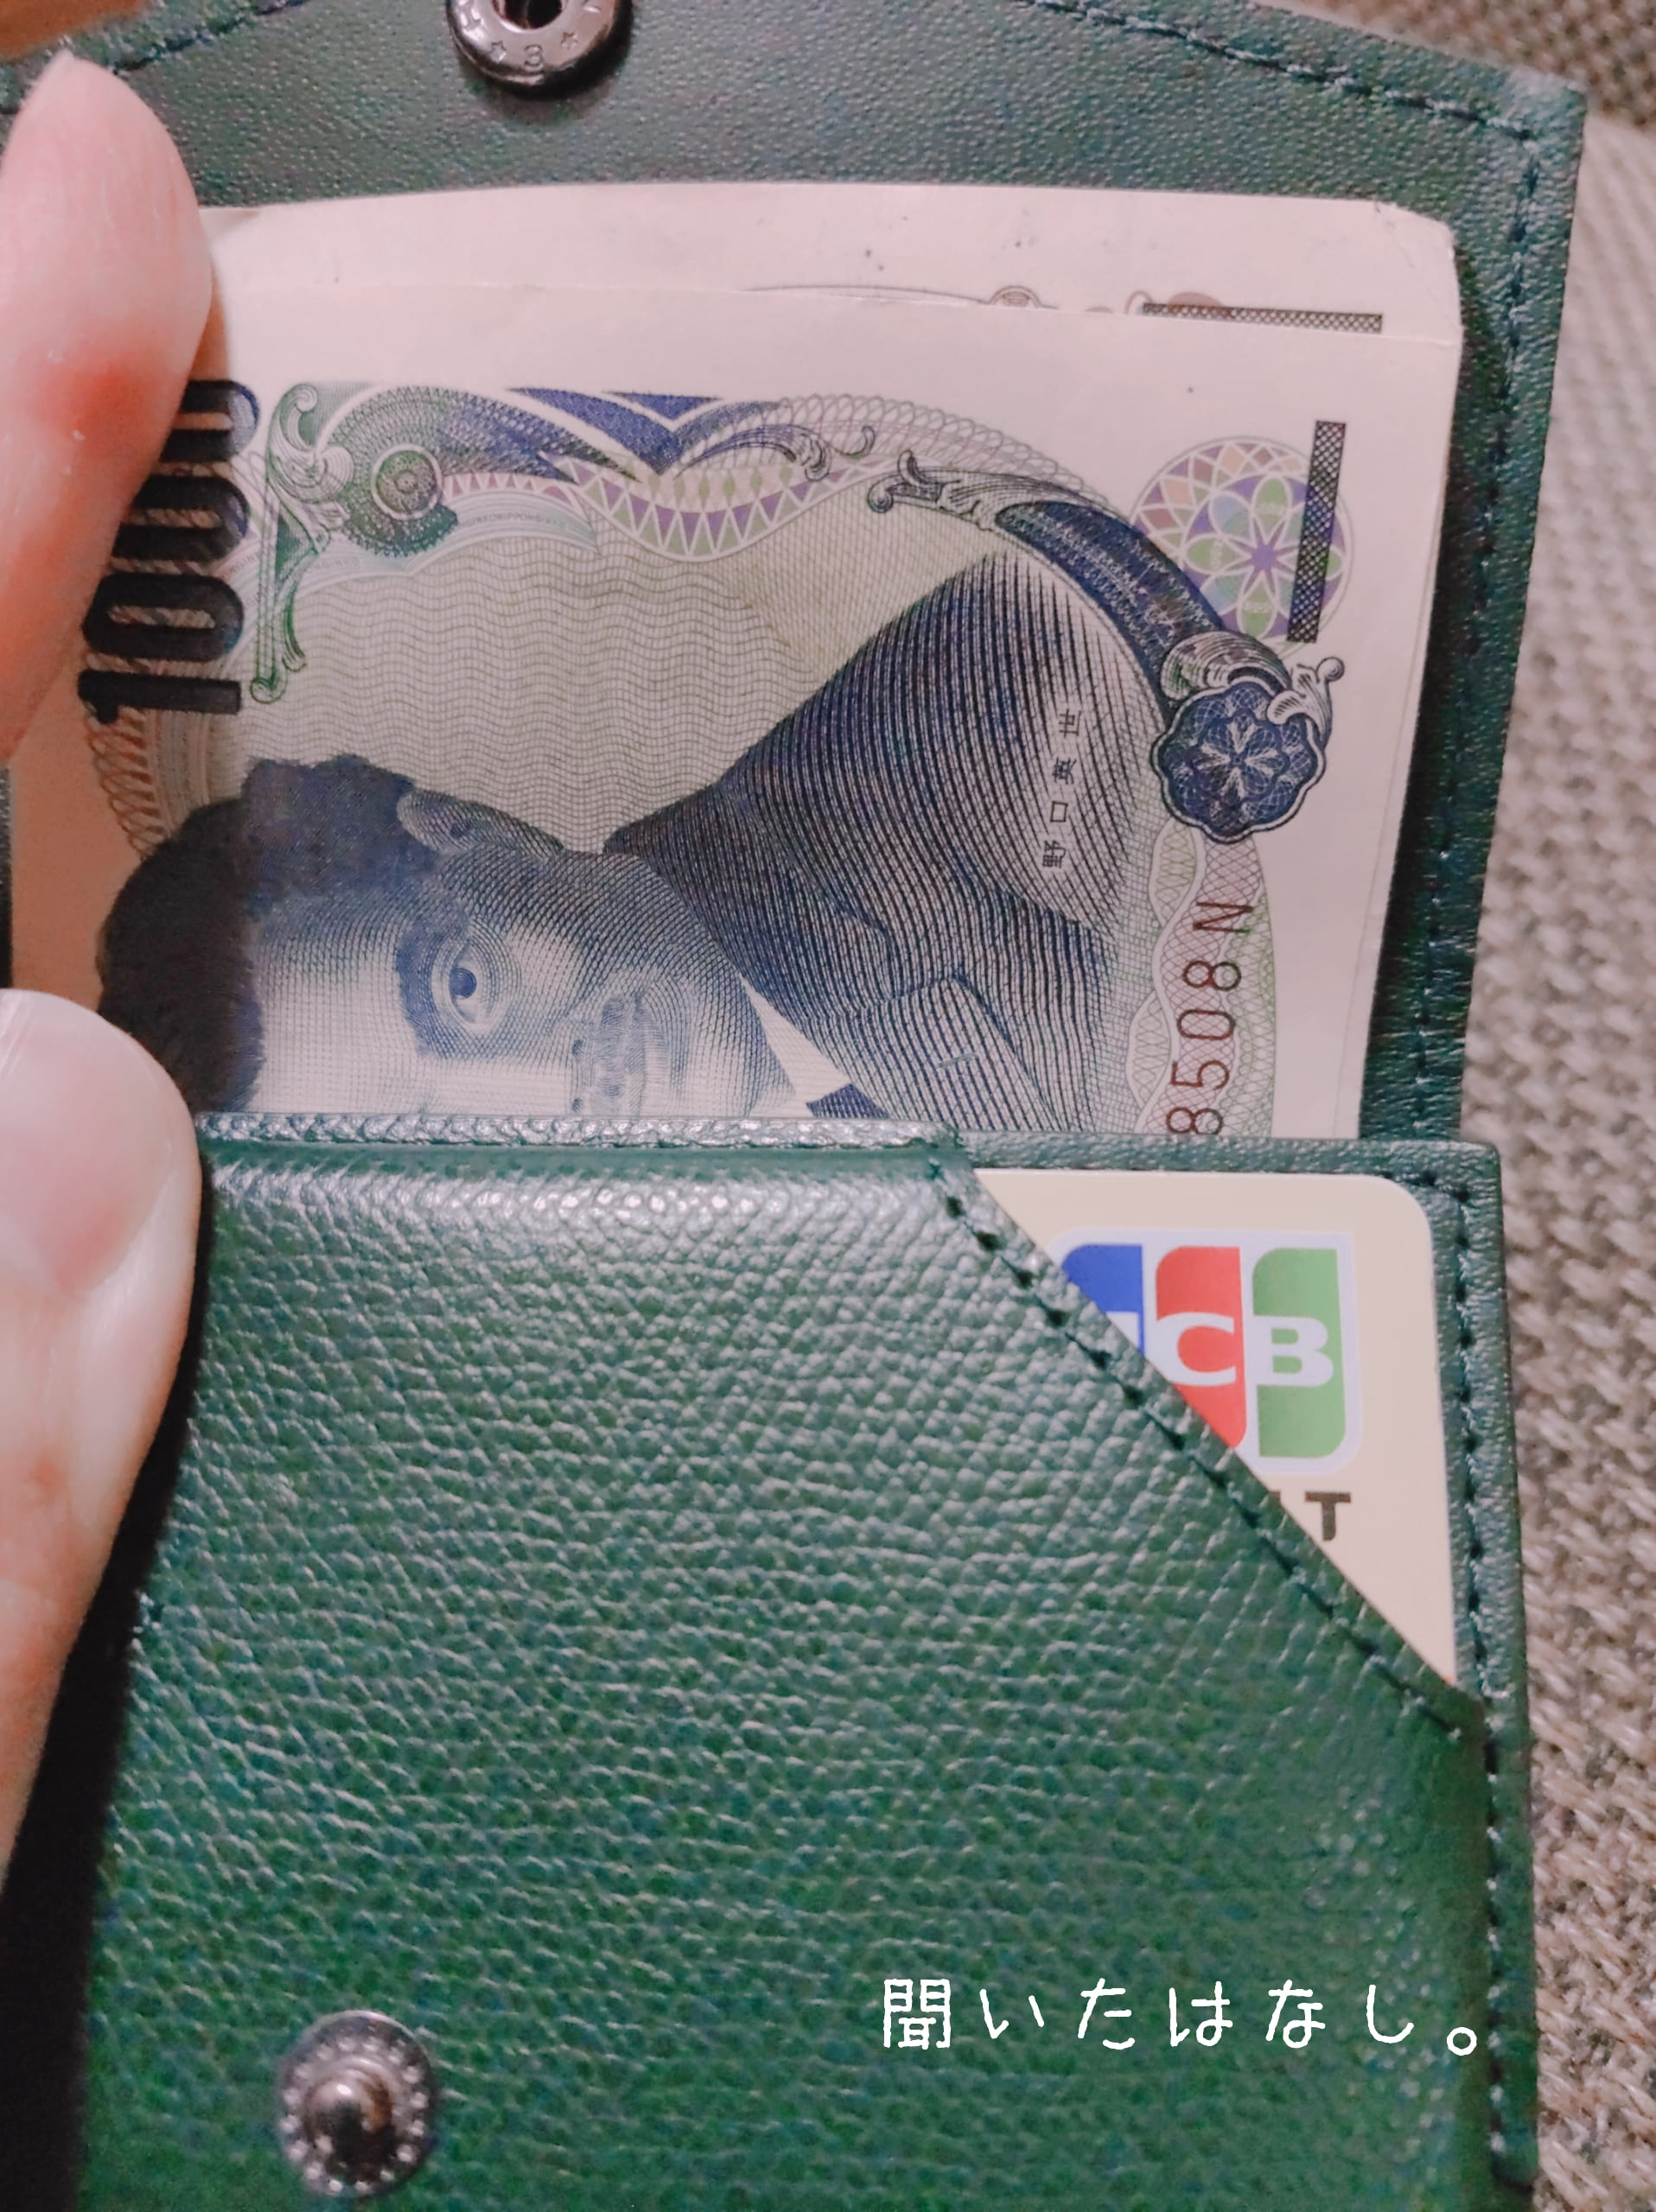 アブラサスの小さい財布にお札とカードを入れた画像